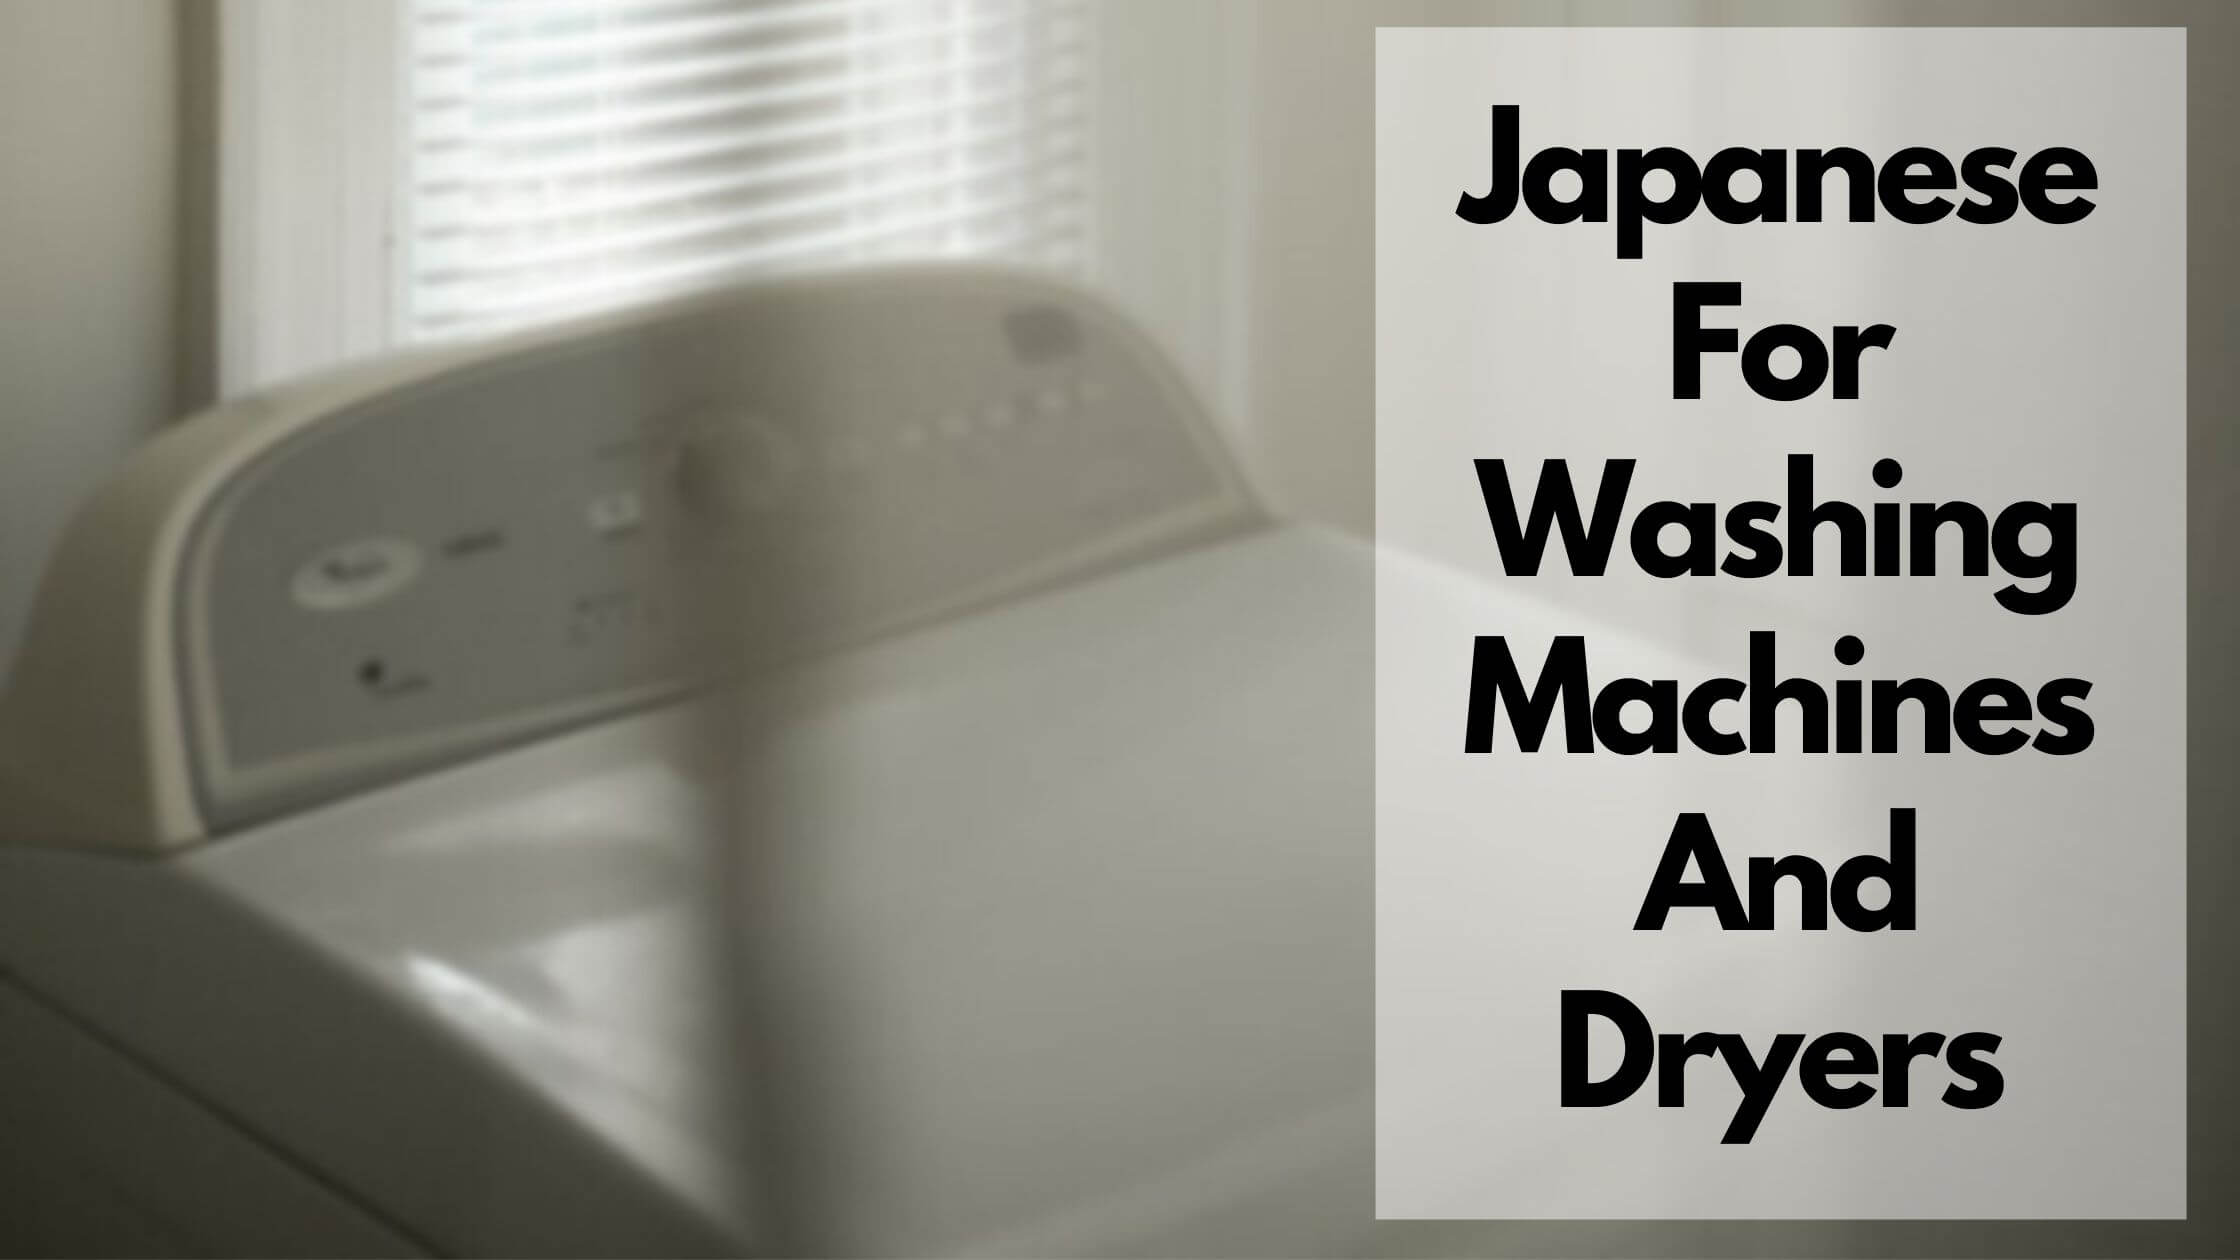 洗衣机和烘干机的日文 (1)